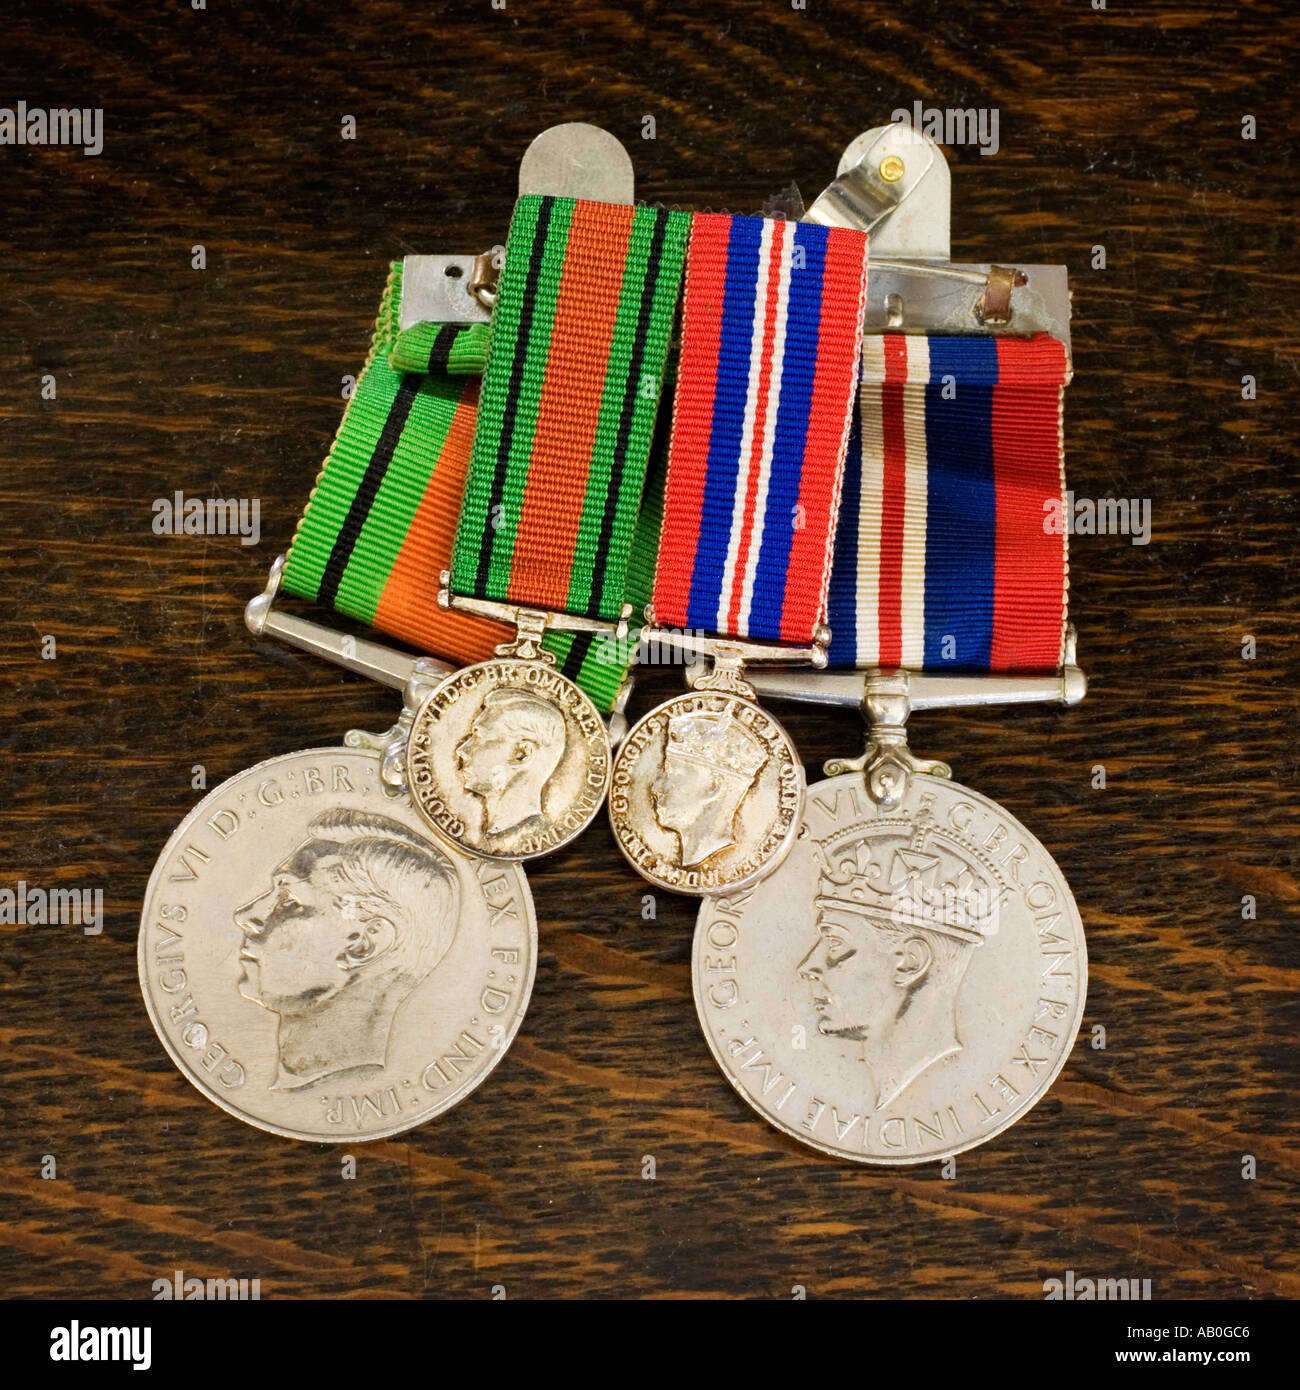 WW2 Servicio británico guerra campaña medallas con versiones más pequeñas para vestir en una solapa Foto de stock